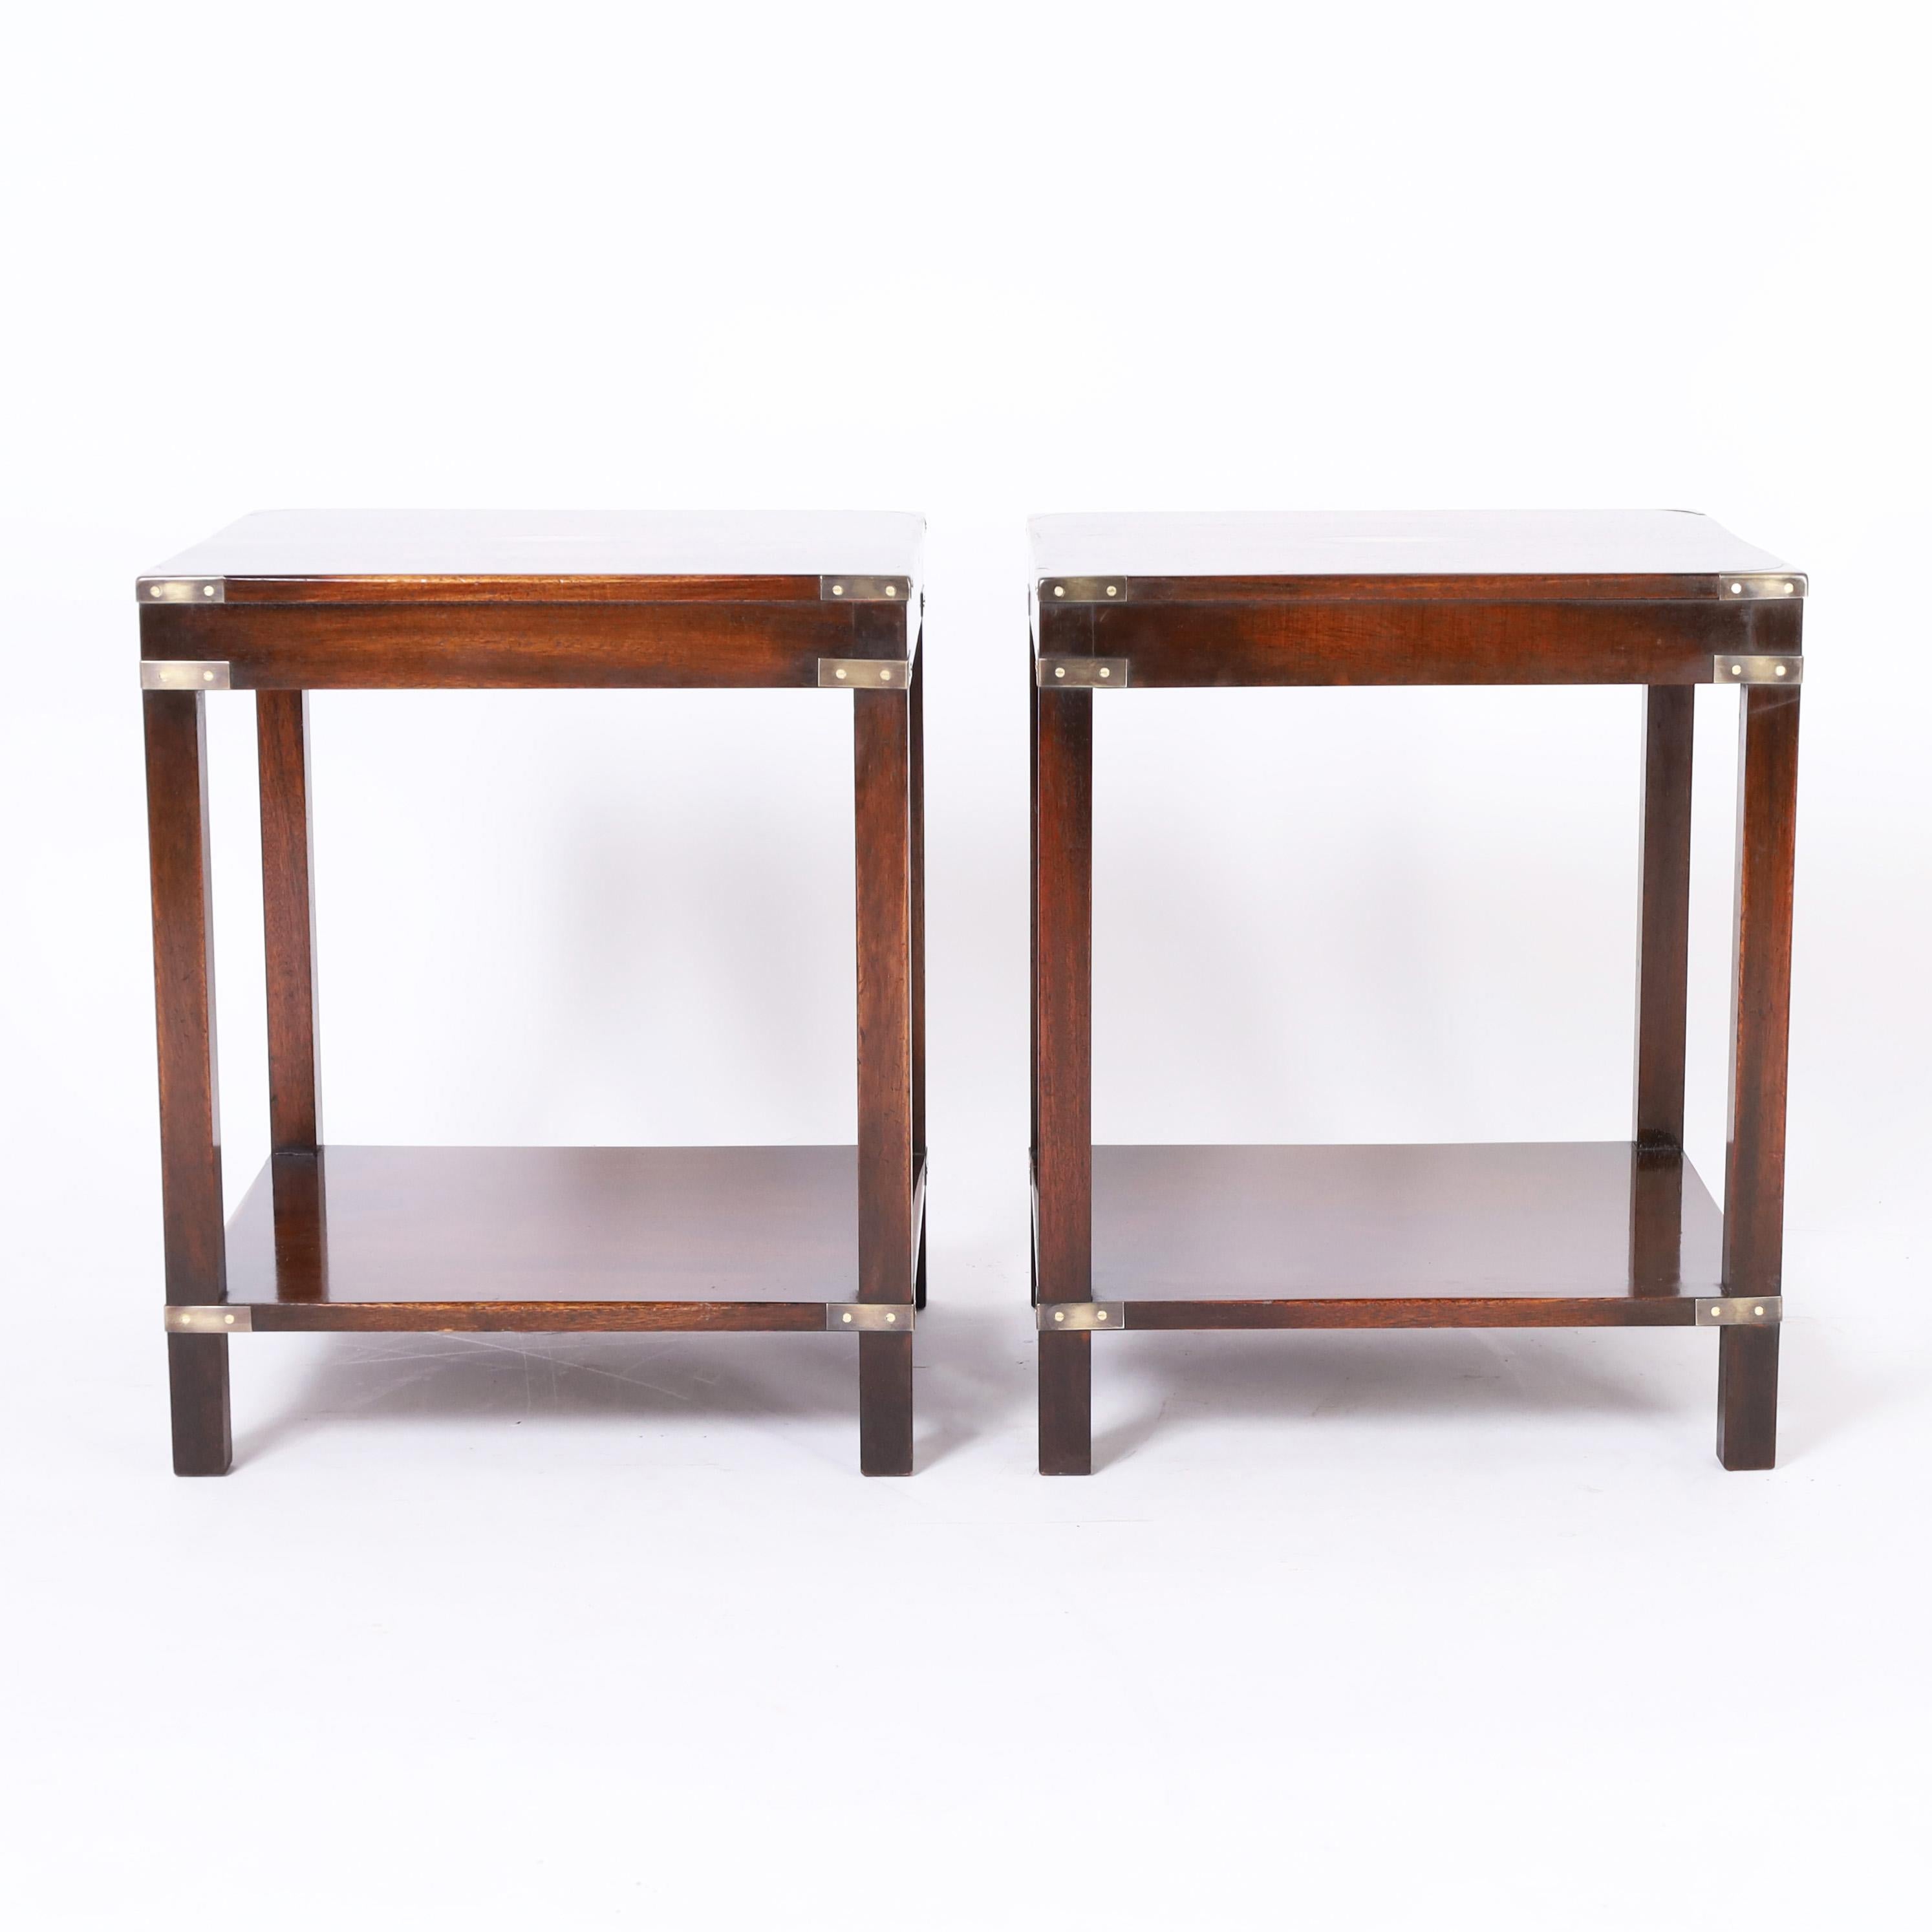 Magnifique paire de chaises de style colonial britannique en acajou à deux niveaux, de forme Parsons stylisée, avec des ferrures en laiton de style campagne.